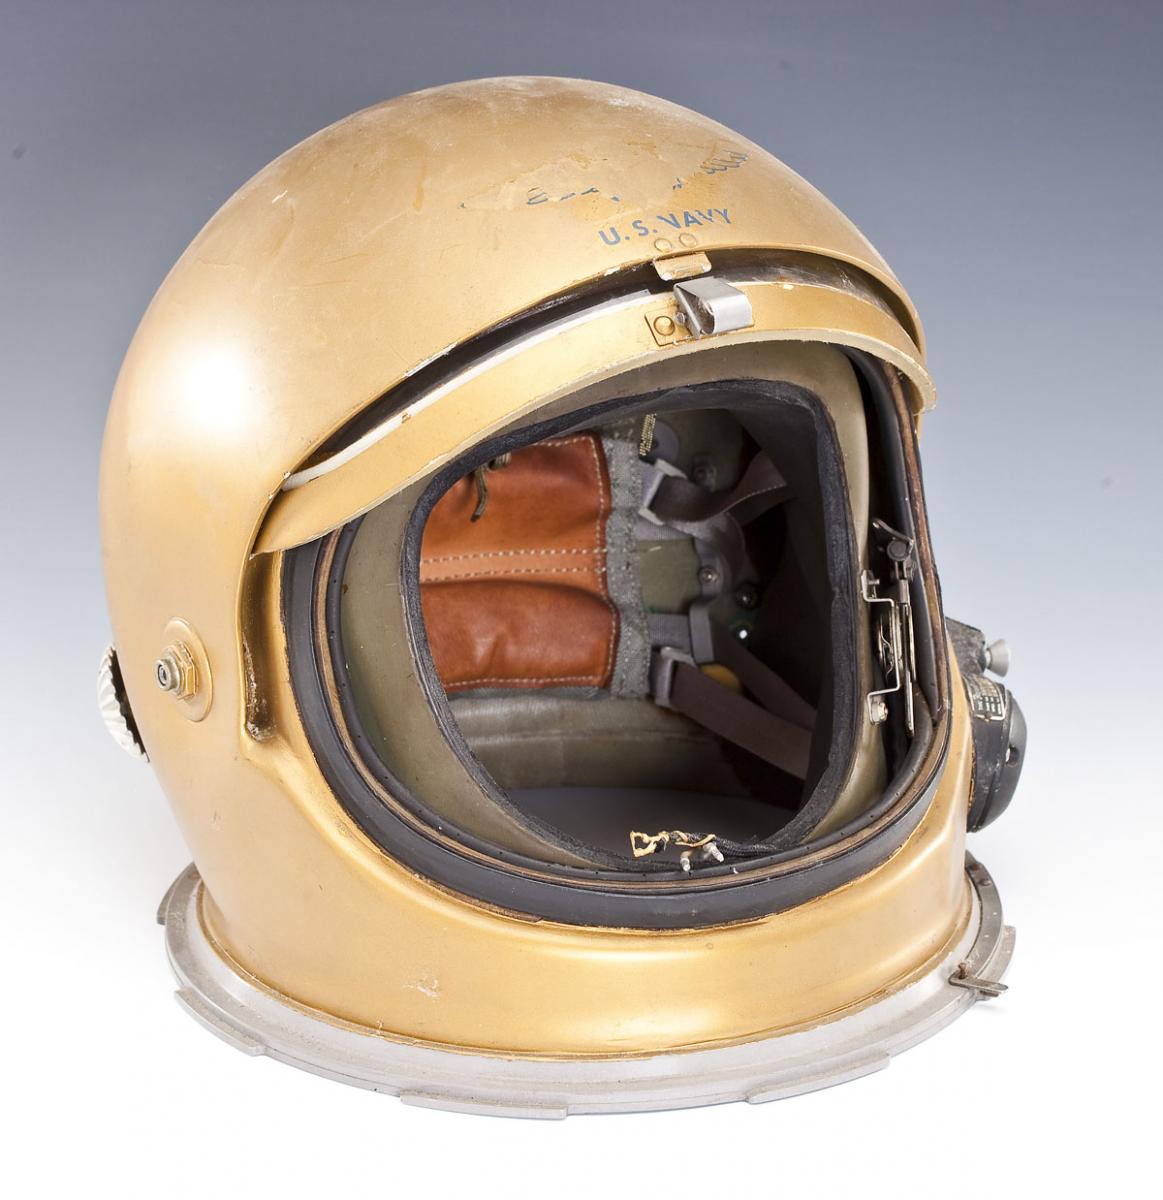 US Navy High Altitude Helmet - Sold $2,800